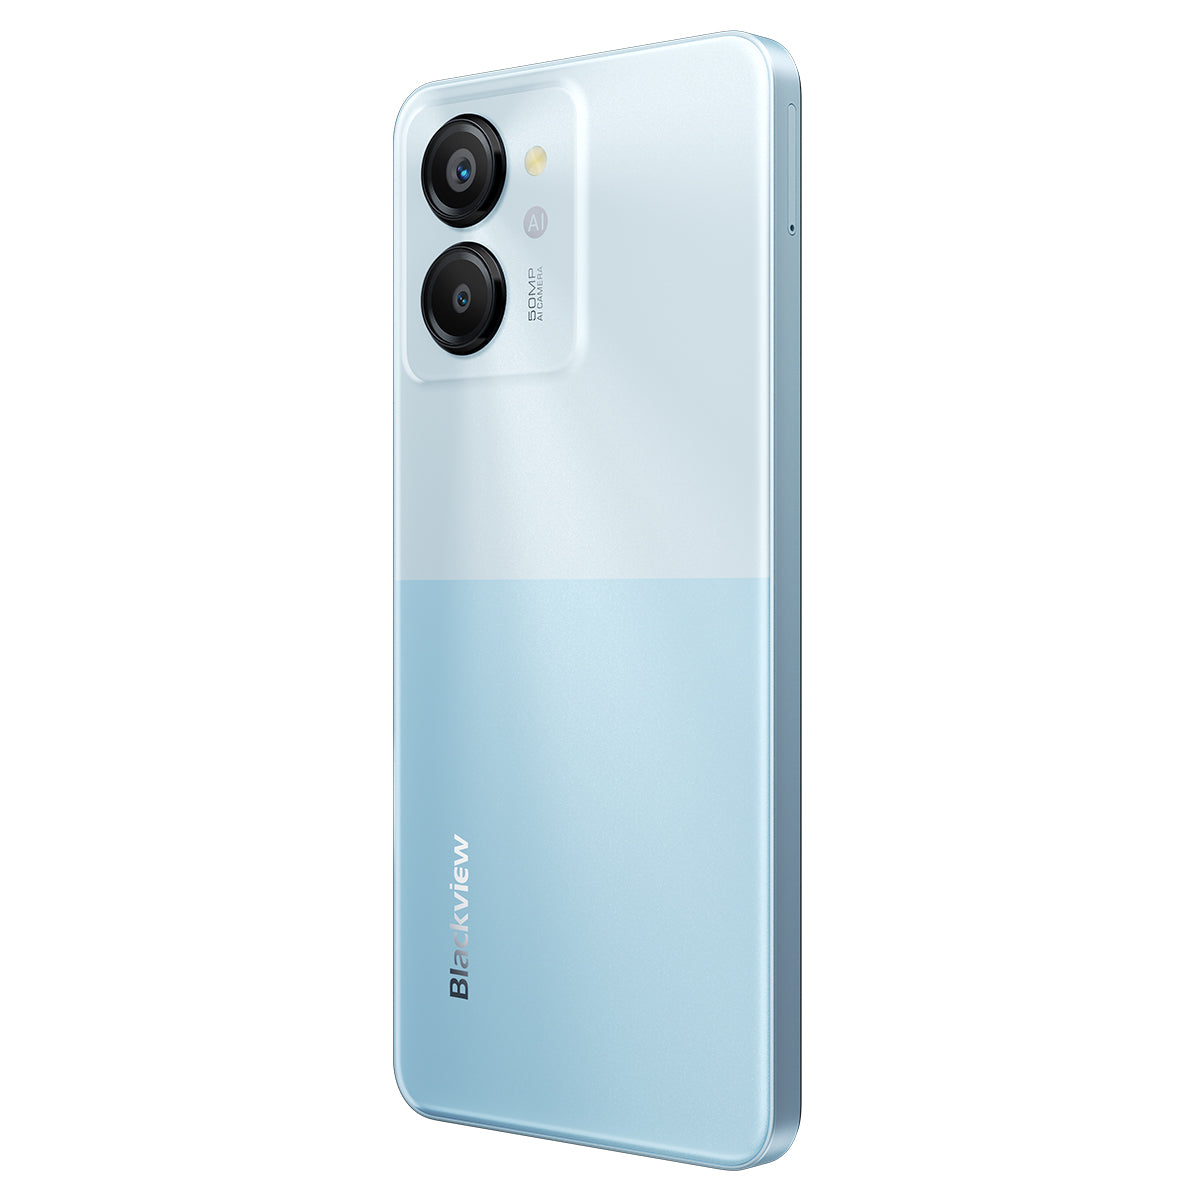 Blackview Color 8 - Smartphone Unisoc T616 Octa-core 6,75 pouces, 8 Go + 128 Go/256 Go, appareil photo 50 MP, 4G